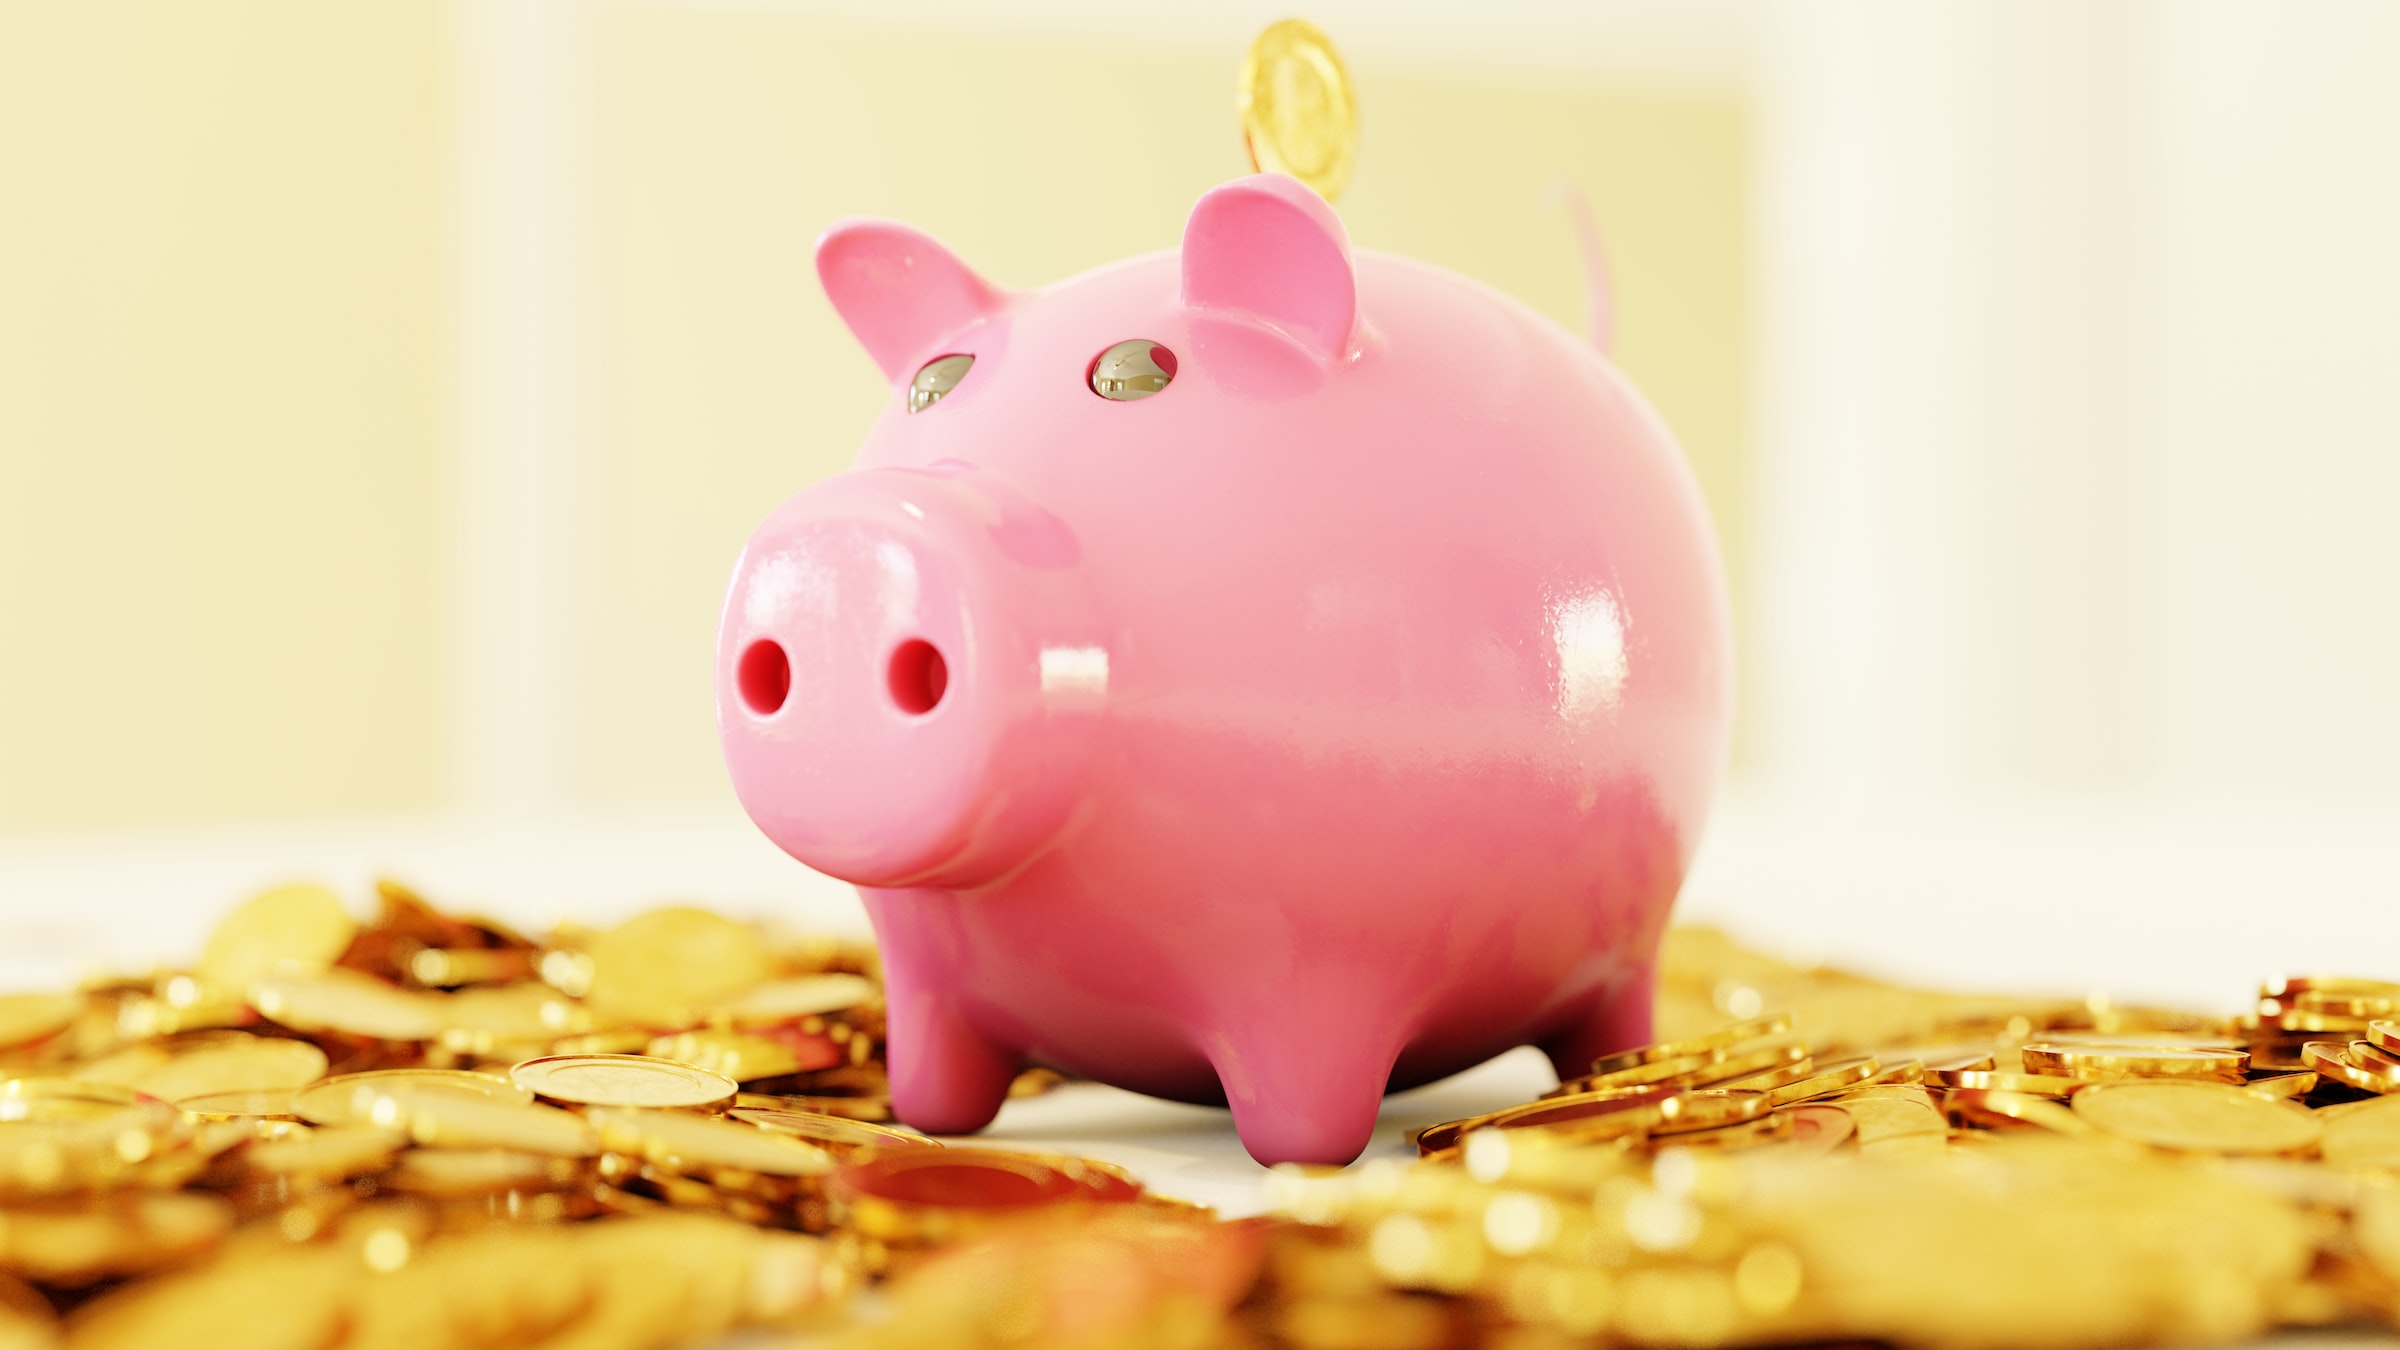 A piggy bank ontop of coins